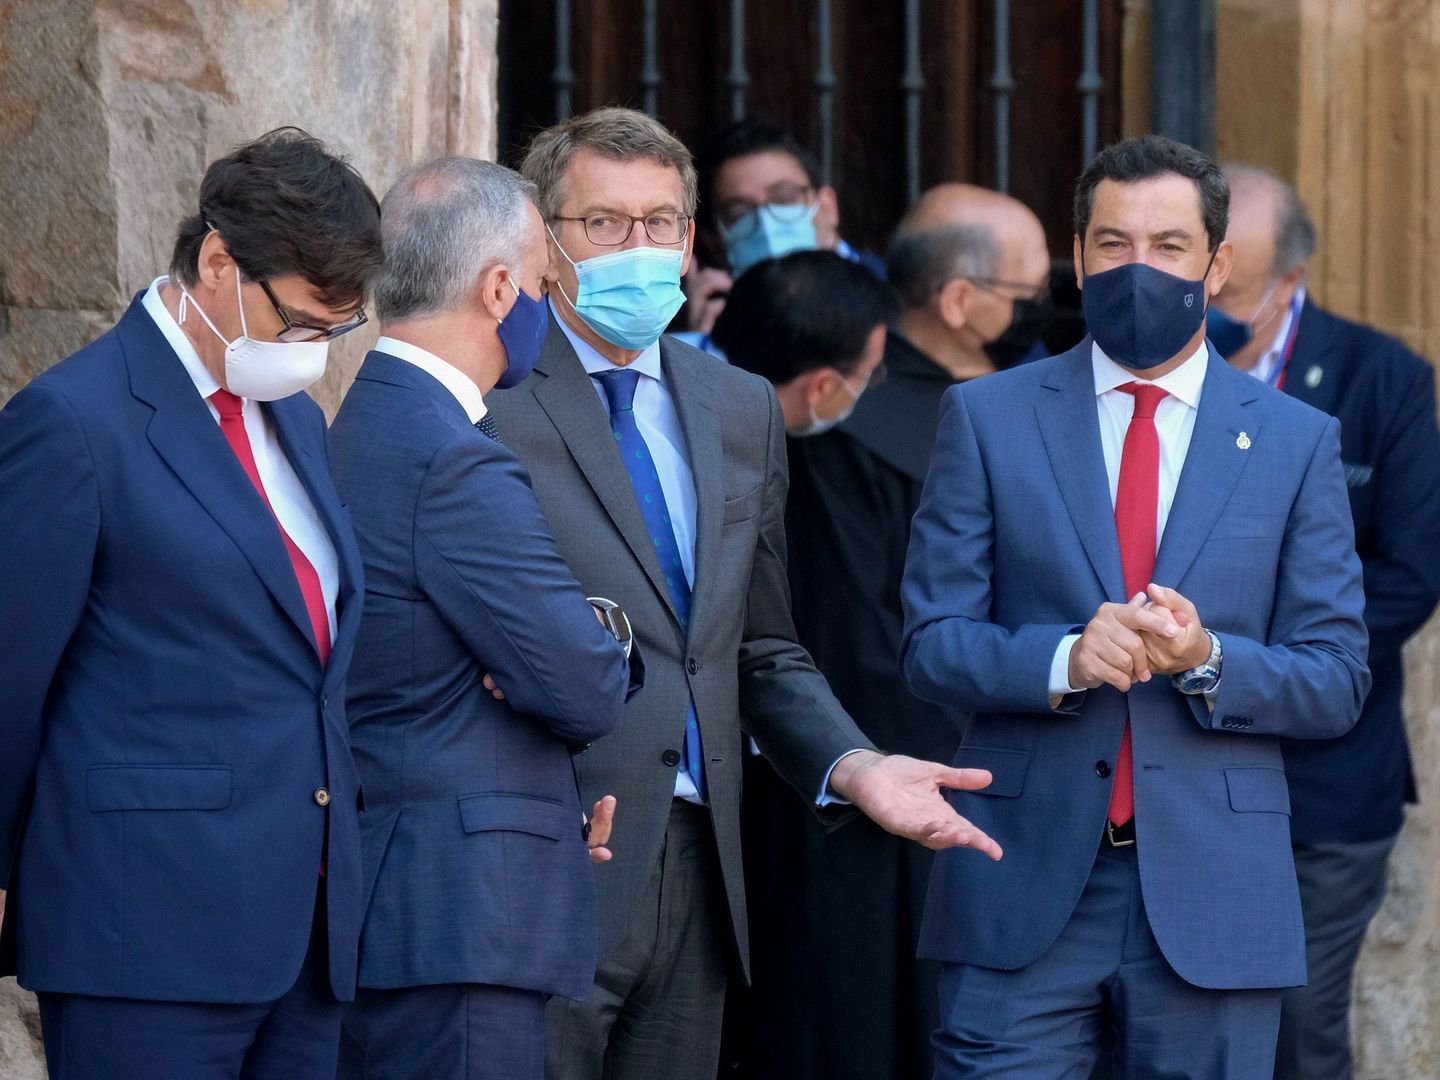 De derecha a izquierda: los presidentes de Andalucía, Juanma Moreno; Galicia, Alberto Núñez Feijóo; País Vasco, Iñigo Urkullu; y el ministro de Sanidad, Salvador Illa. (EFE)